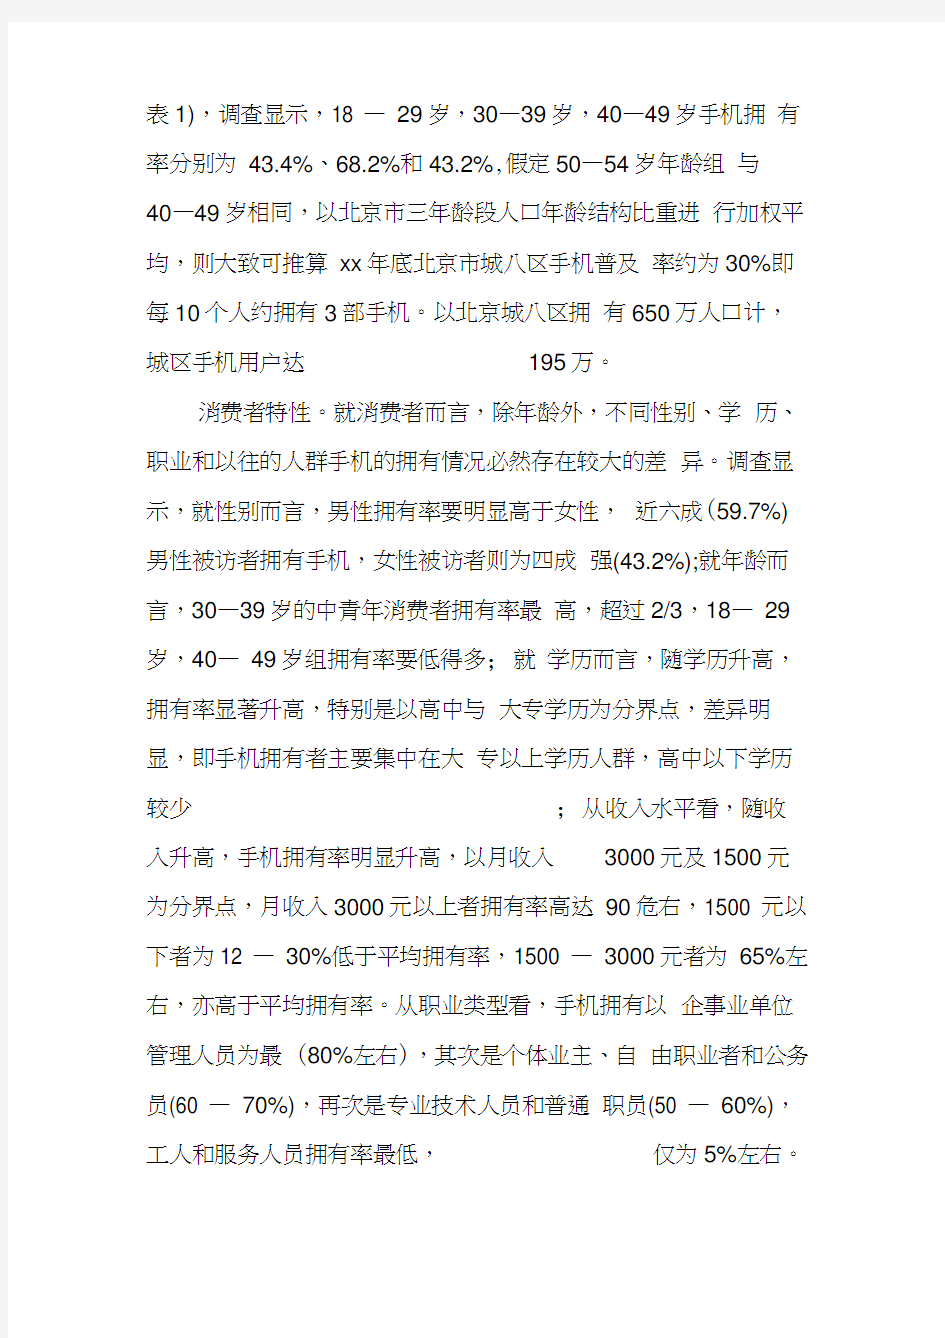 关于中国移动通信业市场状况的优秀调查报告(20210215115525)